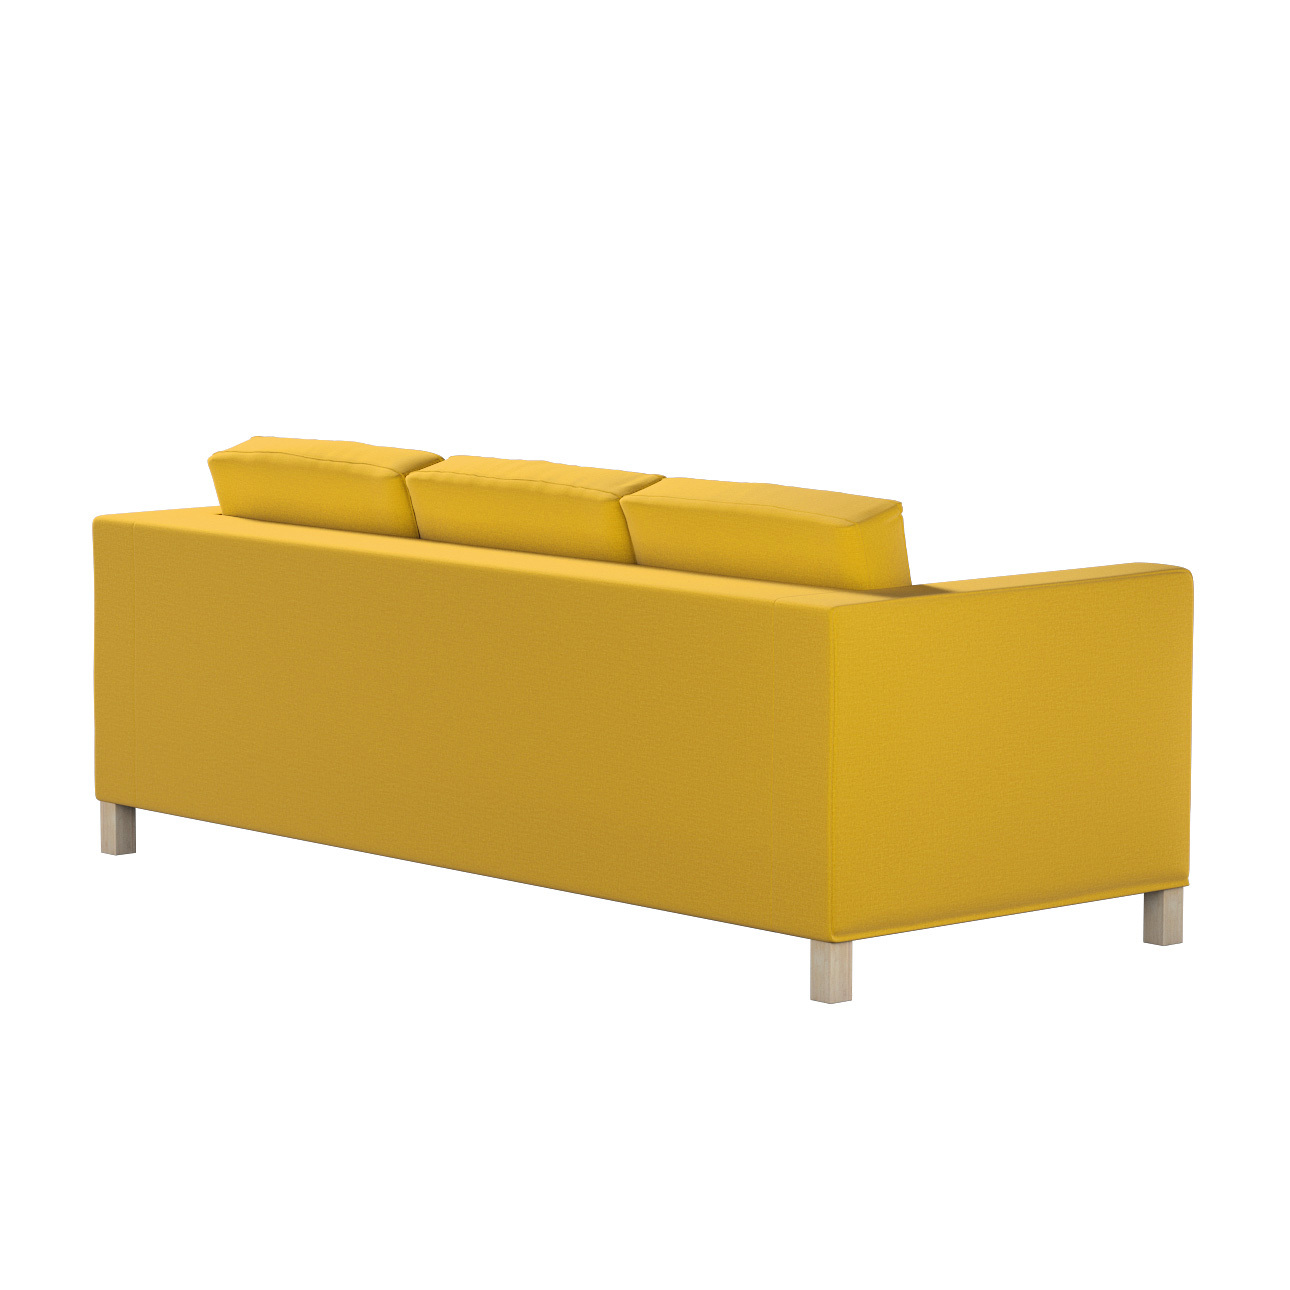 Bezug für Karlanda 3-Sitzer Sofa nicht ausklappbar, kurz, honiggelb, Bezug günstig online kaufen